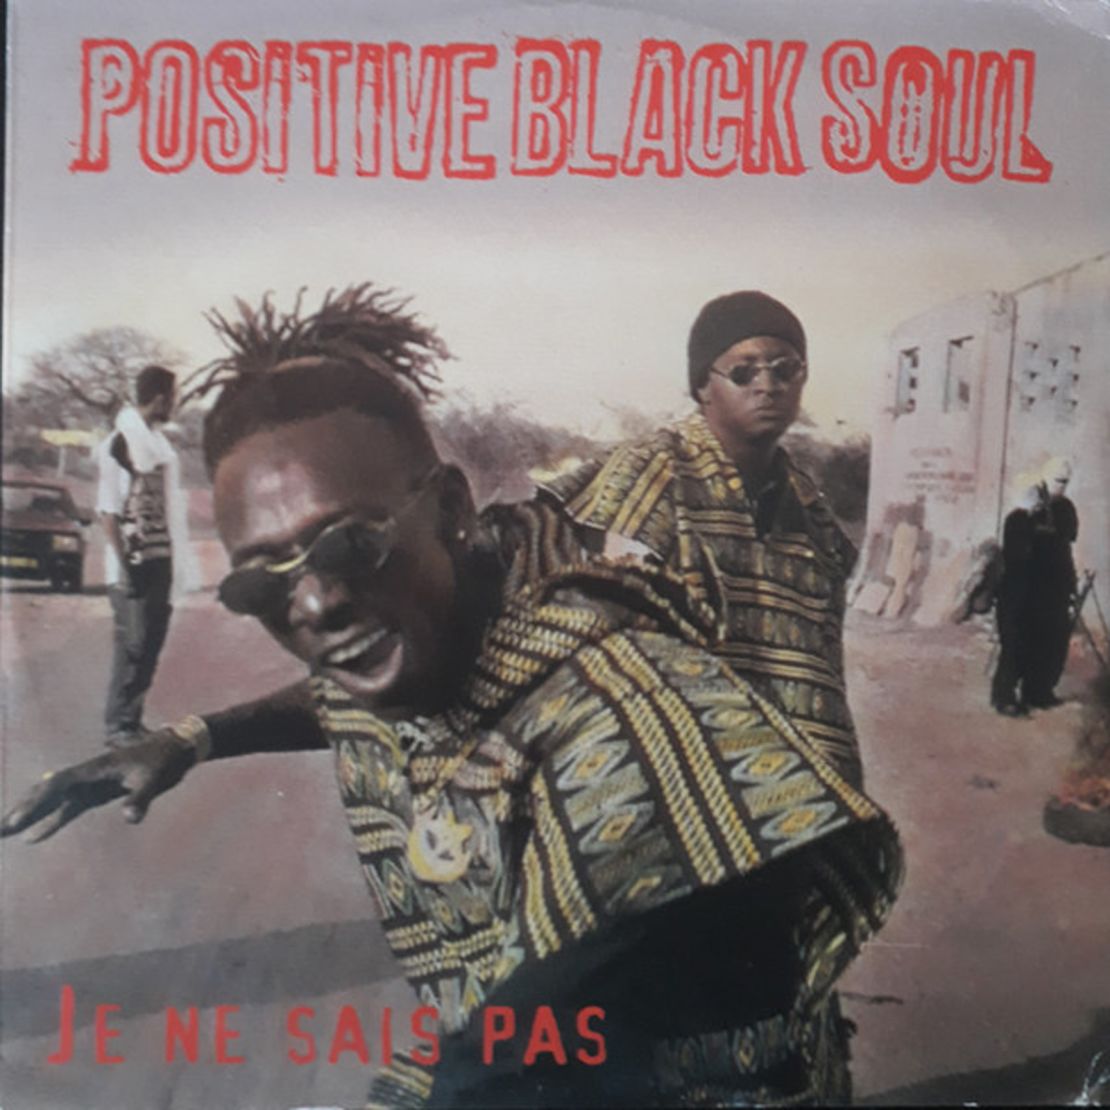 Positive Black Soul's "Je Ne Sais Pas" (1996).